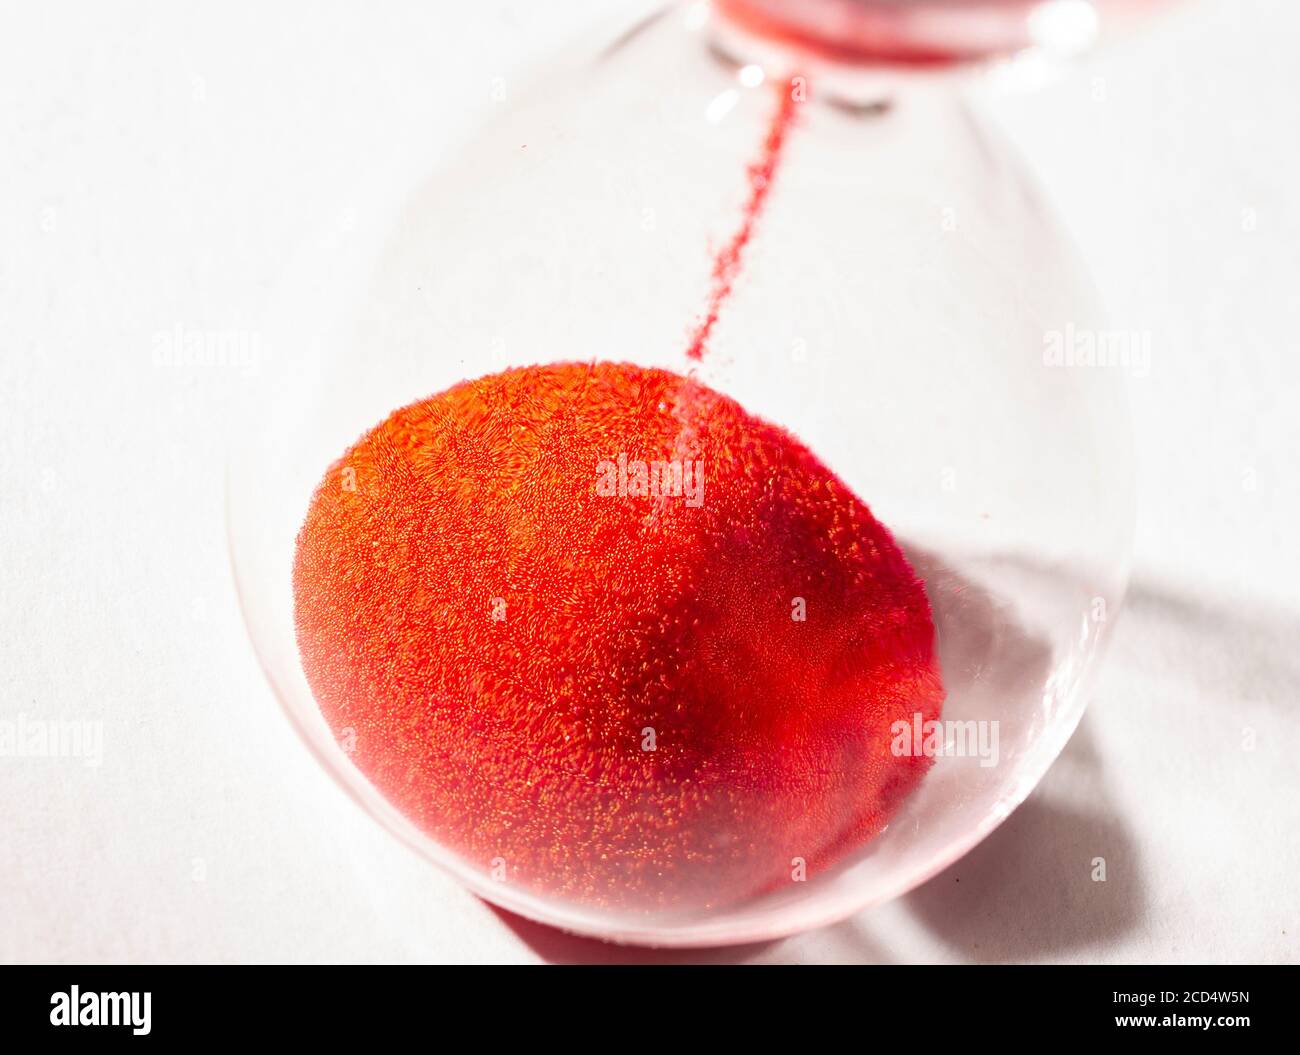 hourglass au sable rouge utilisé pour mesurer le flux temporel, la macro photographie Banque D'Images